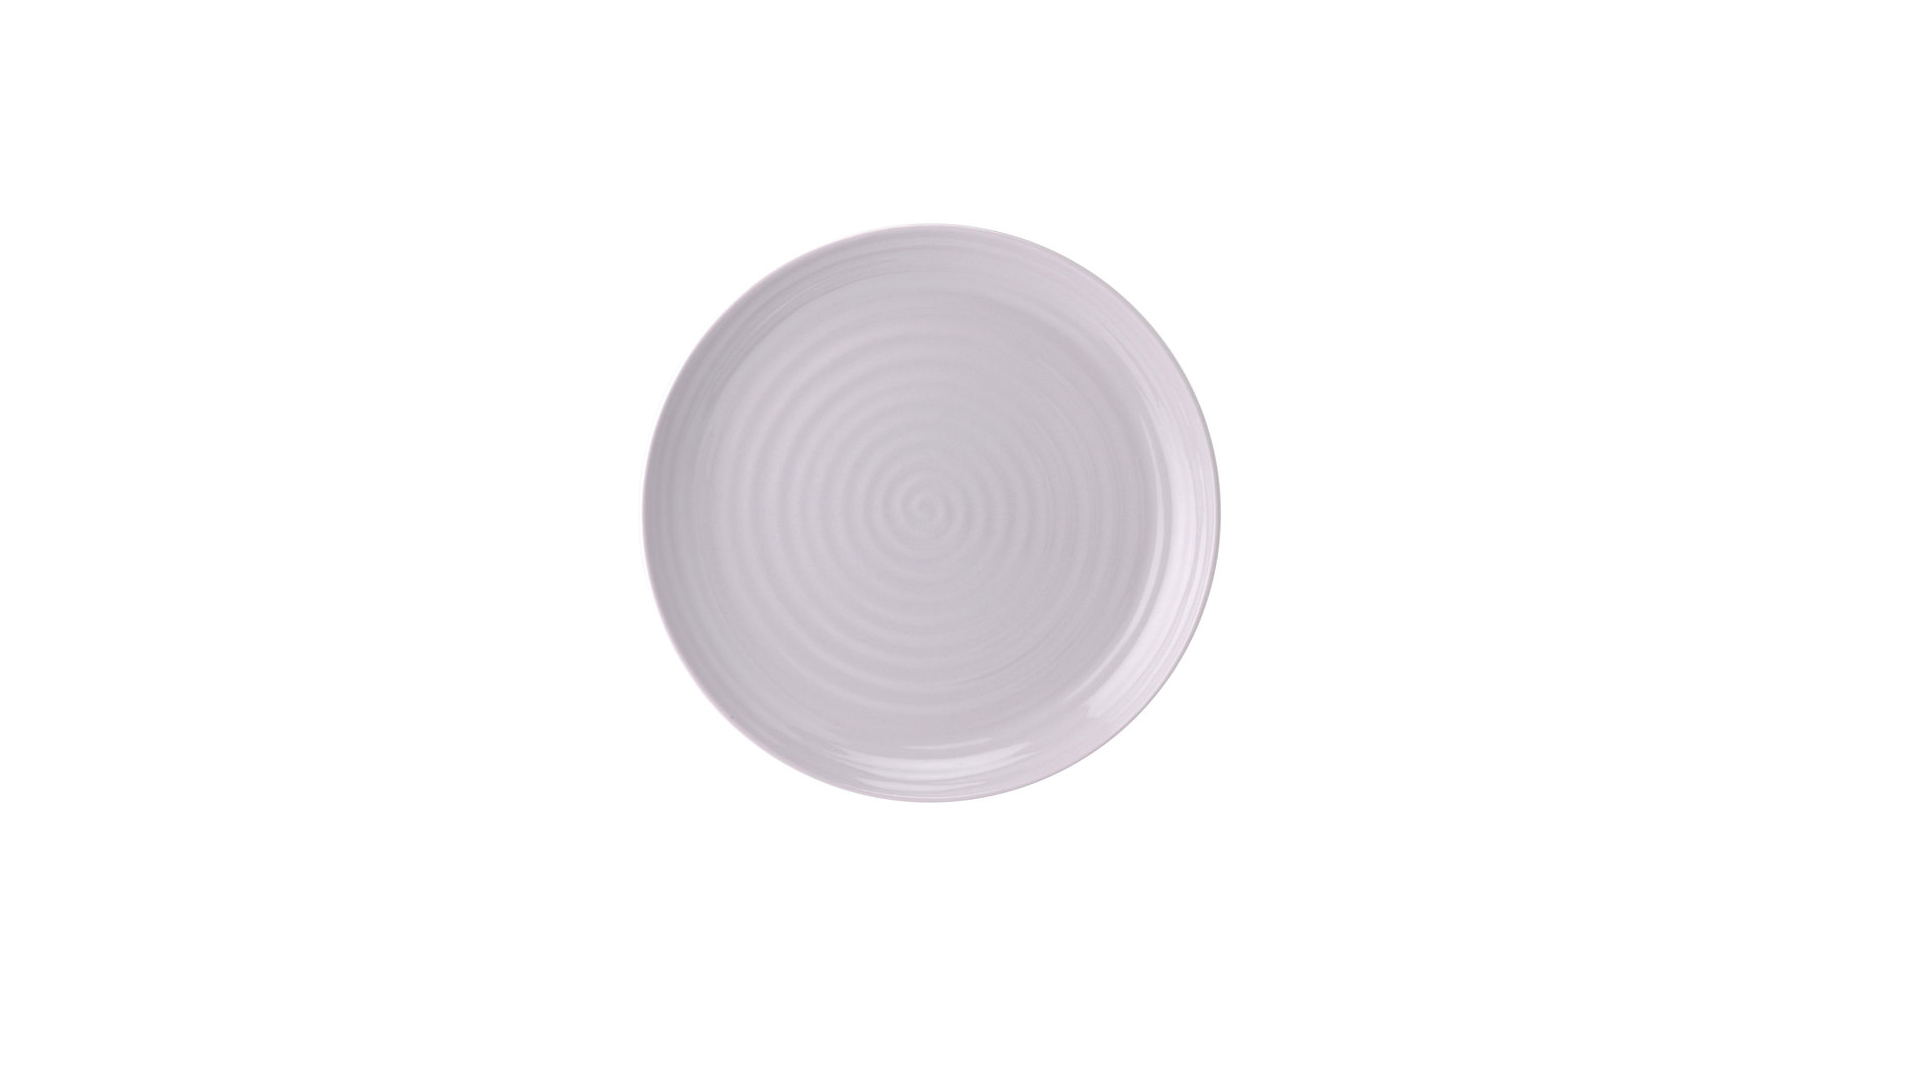 Набор тарелок закусочных Portmeirion Софи Конран для Портмейрион 22 см, 4 шт, в ассортименте